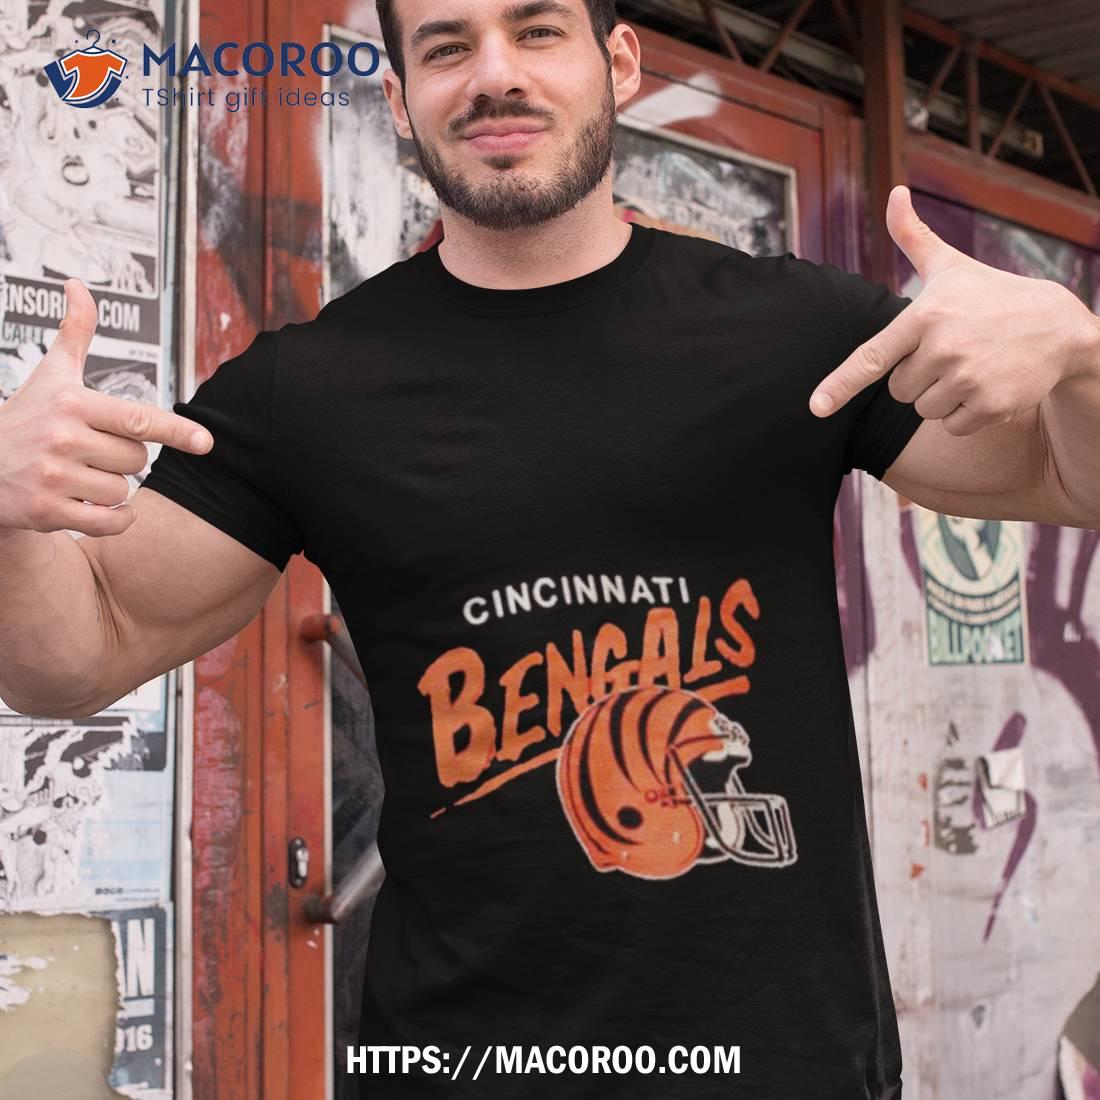 Cincinnati Bengals Gifts, Merchandise, Bengals Playoff Apparel